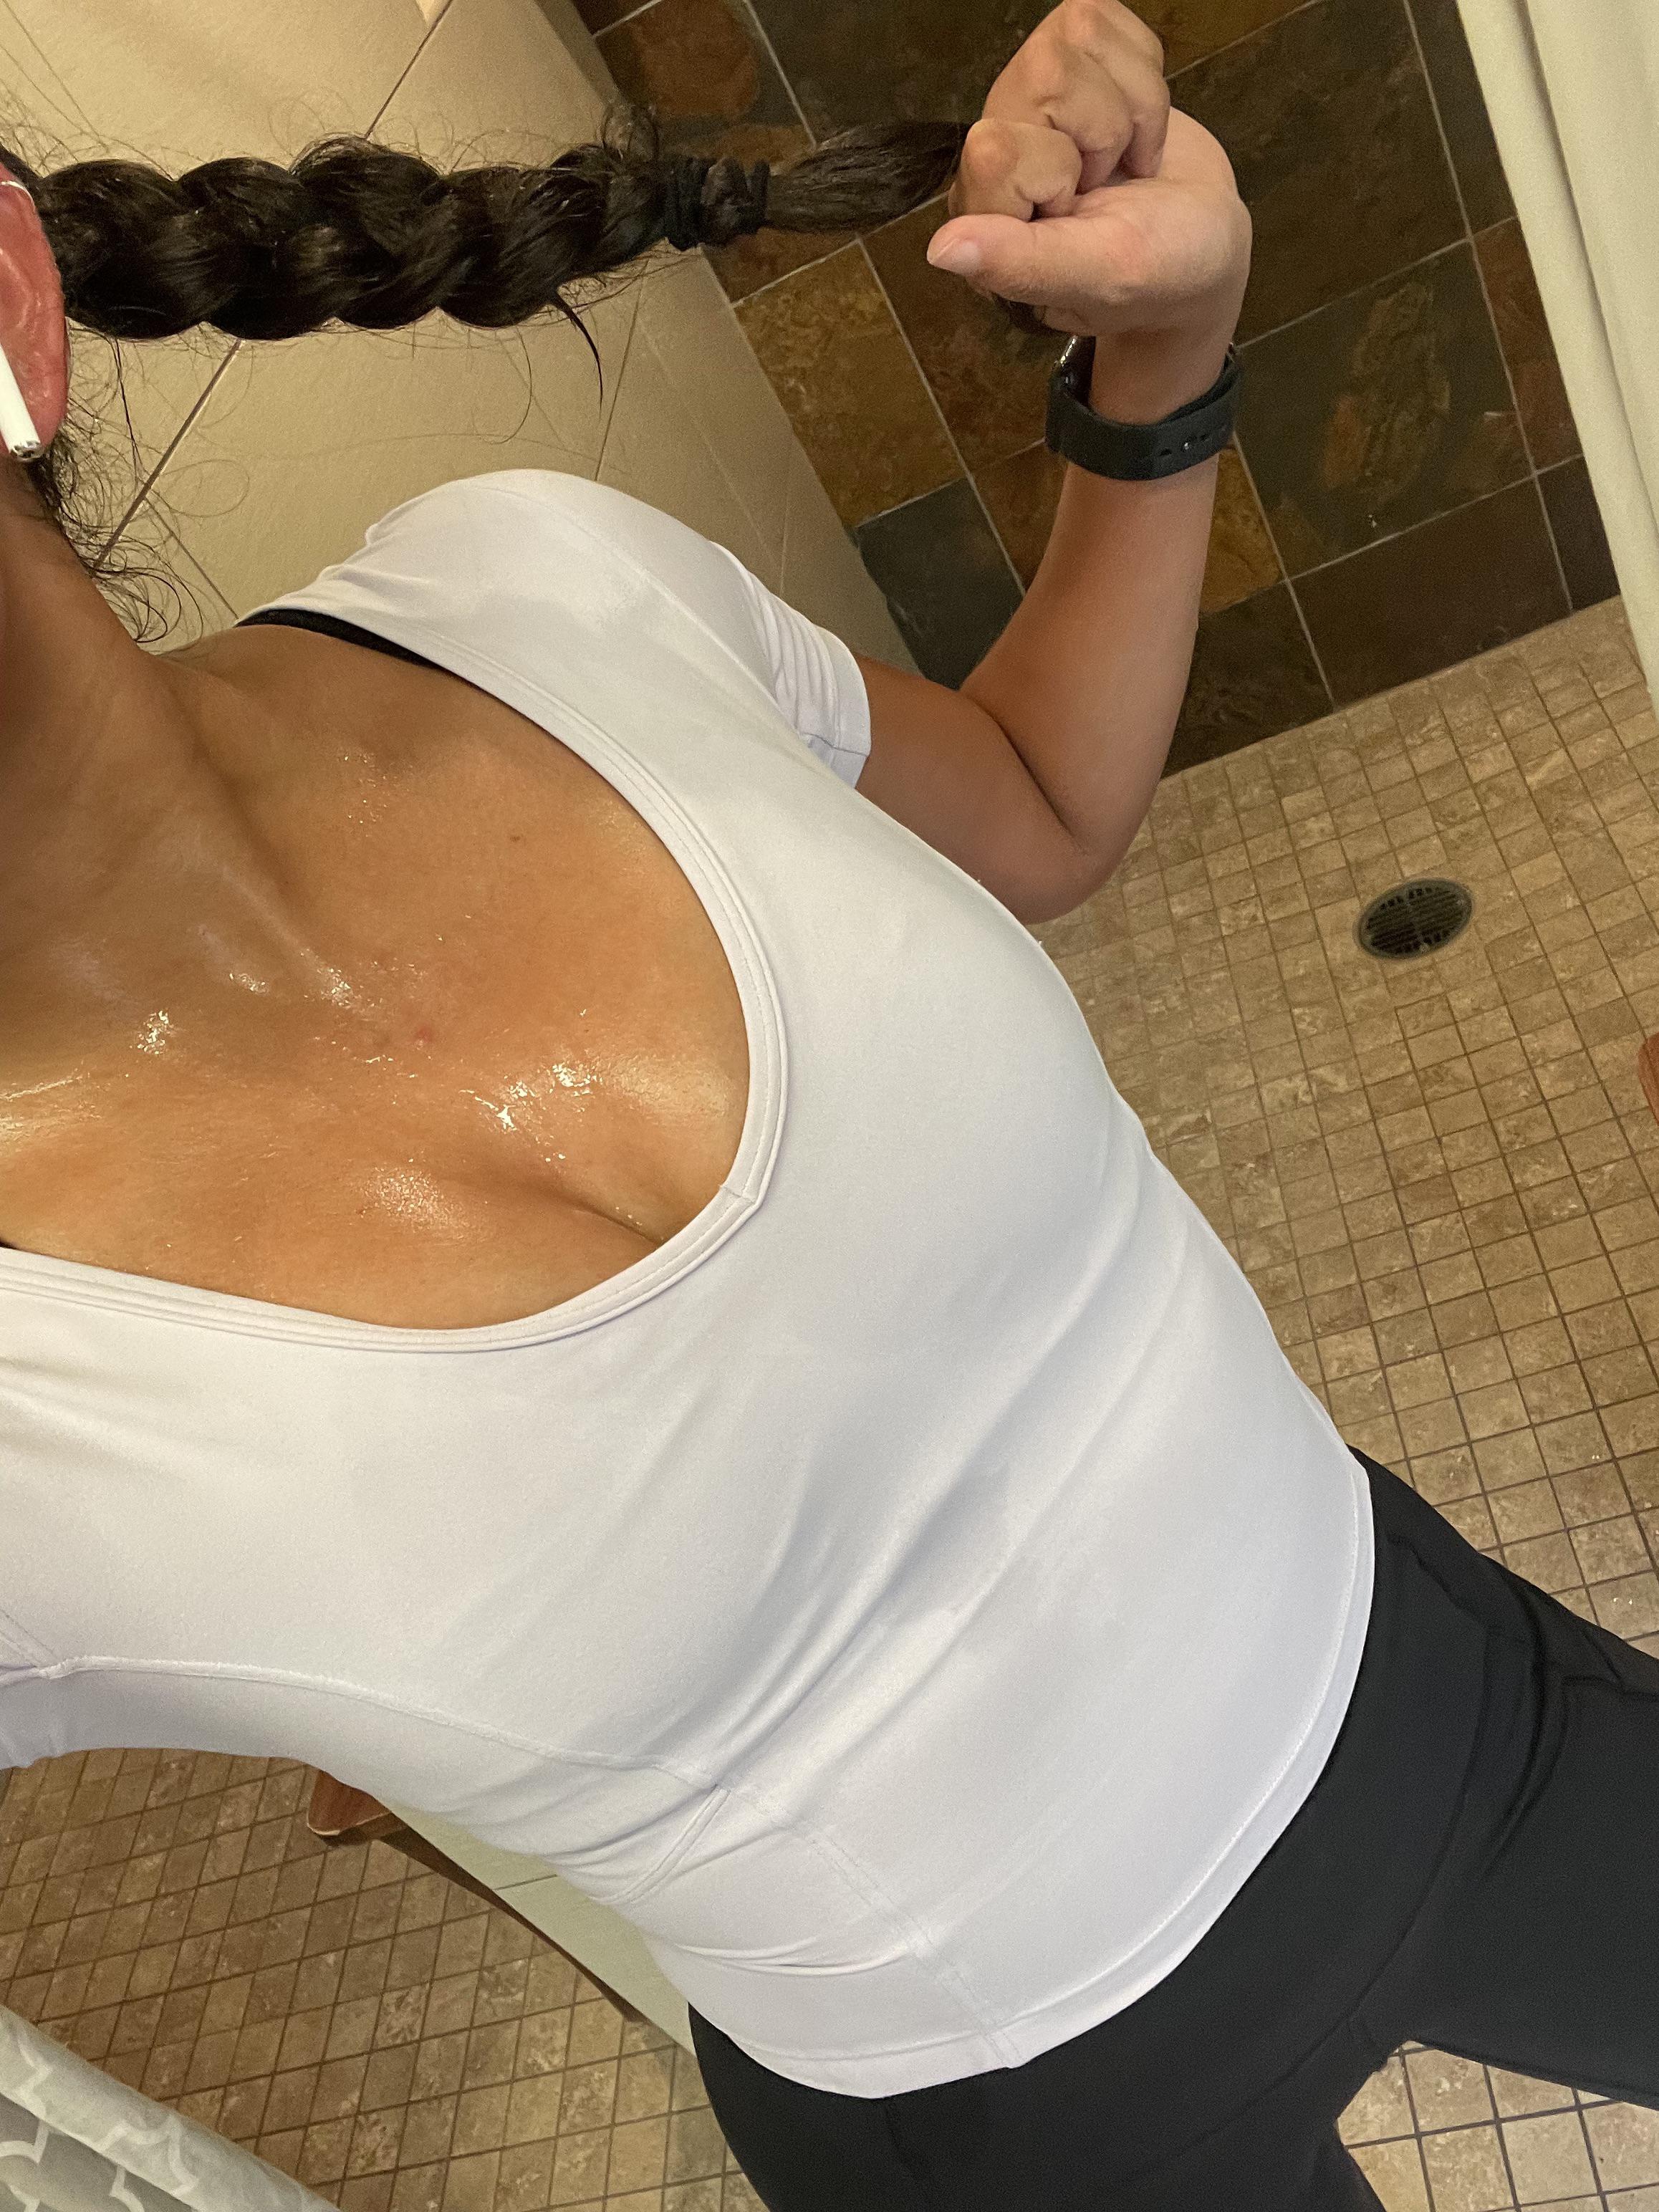 Would you lick my sweaty body up? Post By Sexy Xxx skiicouple69 on gymgirls